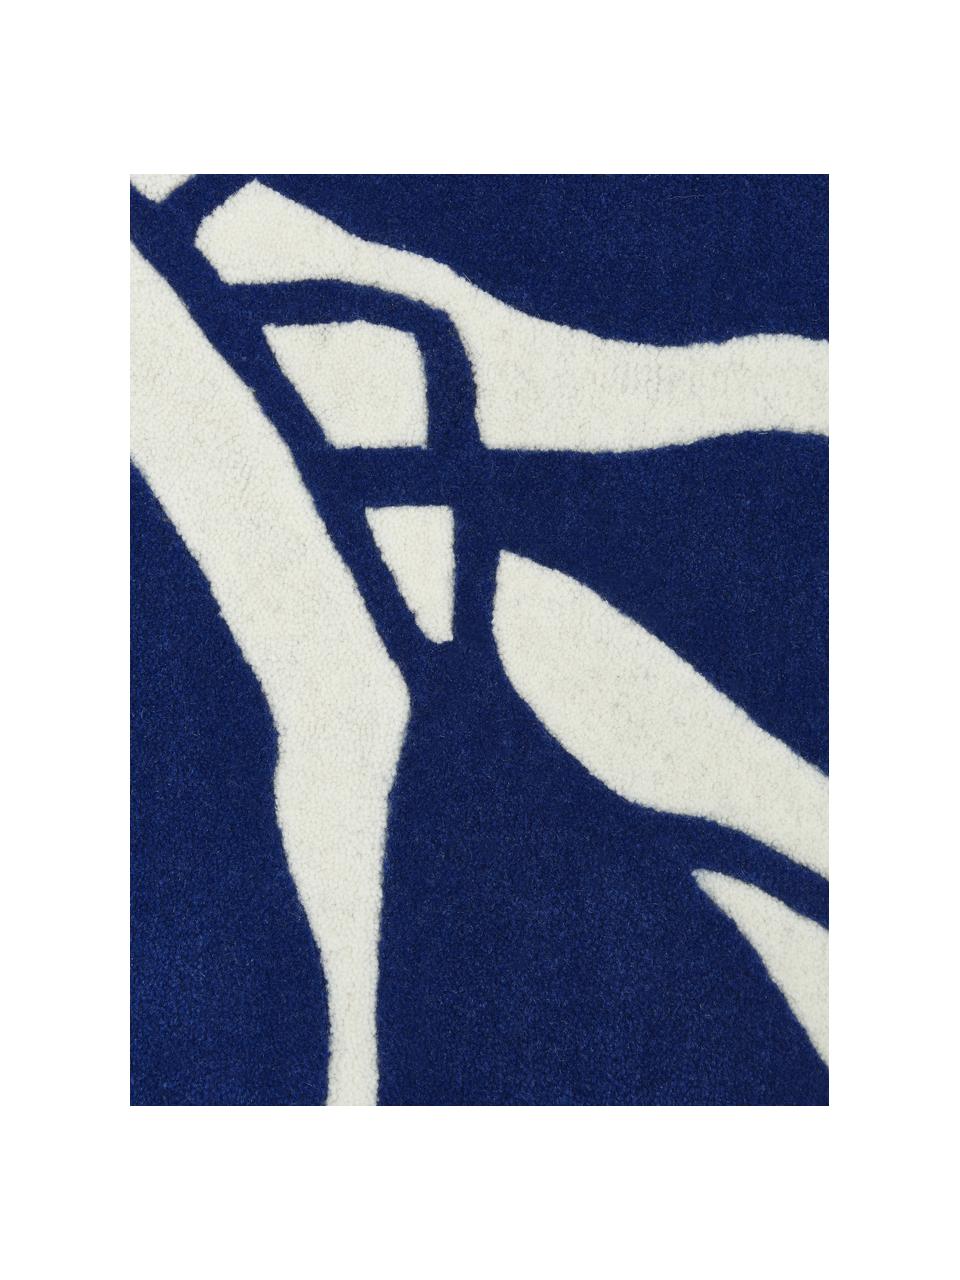 Handgetuft wollen vloerkleed Lando in donkerblauw, 100% wol

Bij wollen vloerkleden kunnen vezels loskomen in de eerste weken van gebruik, dit neemt af door dagelijks gebruik en pluizen wordt verminderd., Crèmewit, blauw, B 80 x L 150 cm (maat XS)